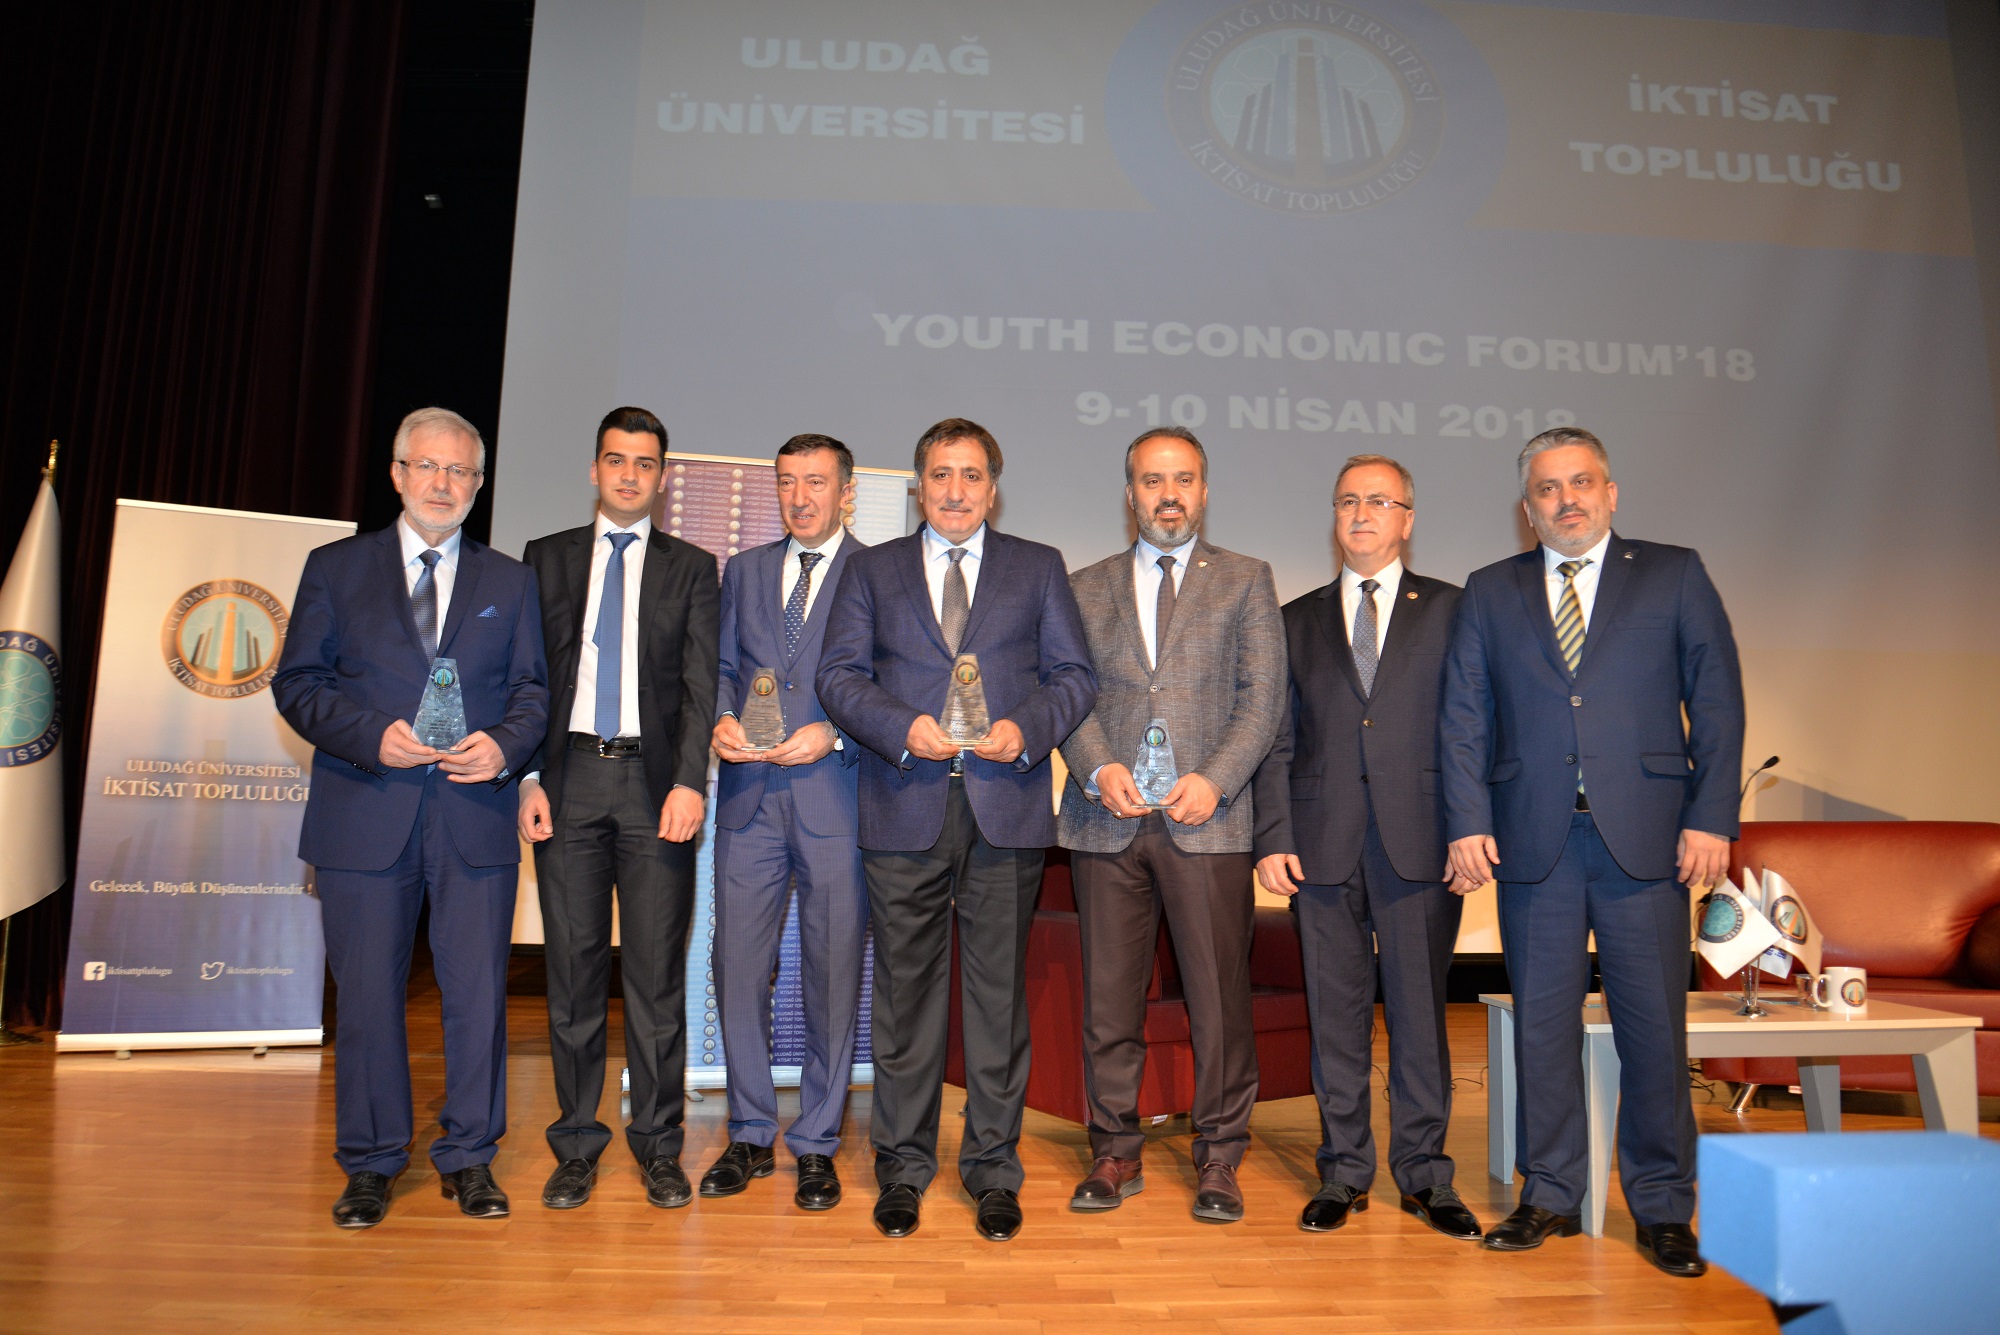  Youth Economic Forum-2018, Uludağ Üniversitesi’nde başladı 